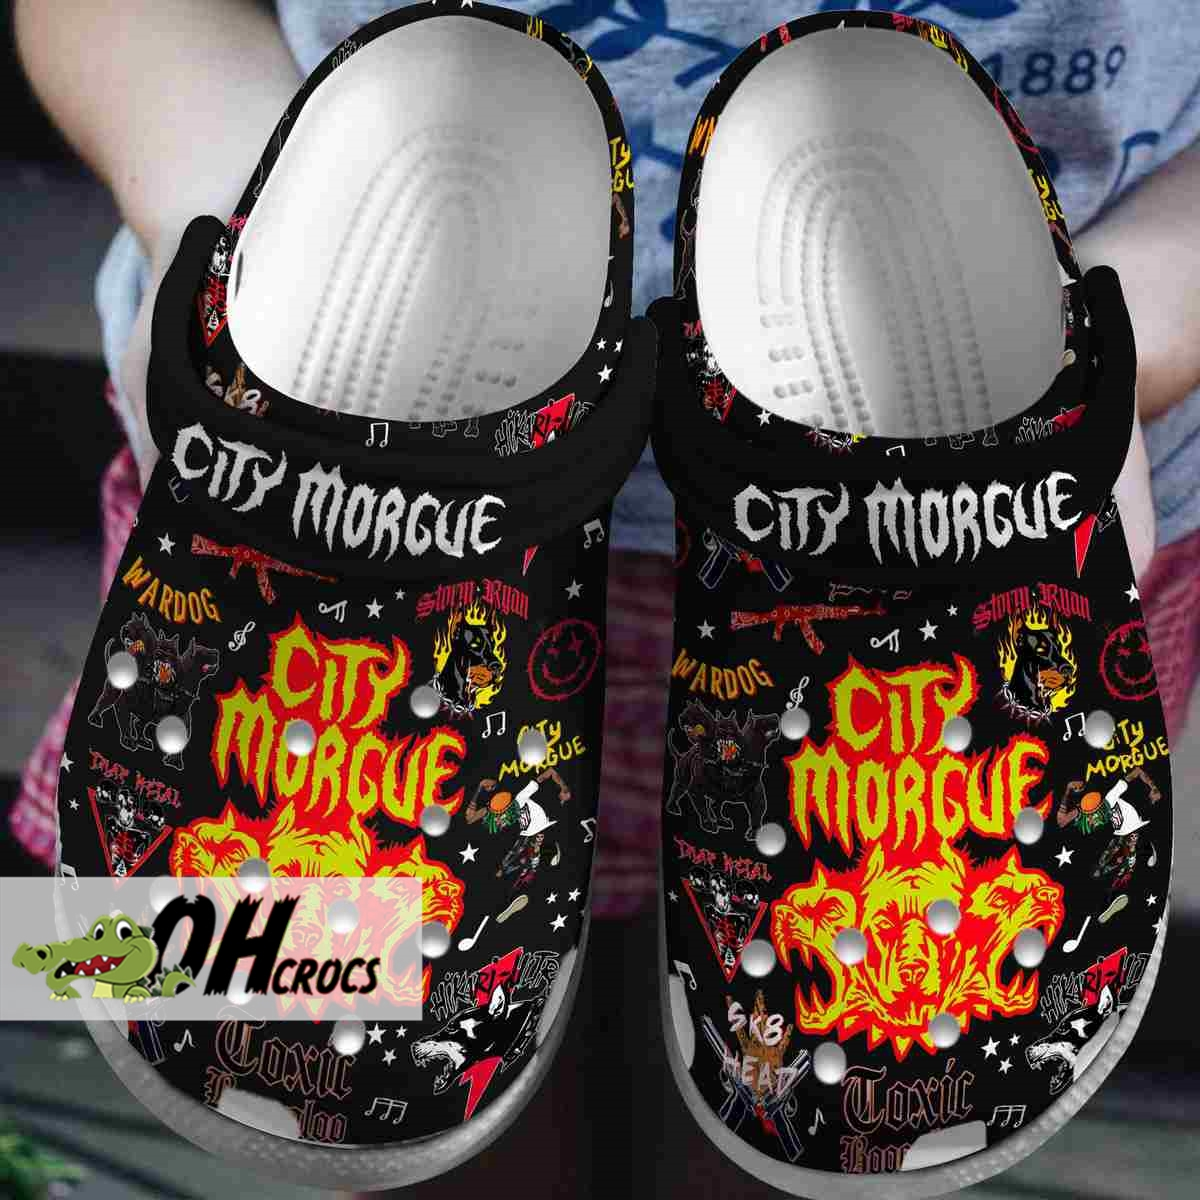 City Morgue Band Custom Crocs Comfort Clog Shoes for Fans 3